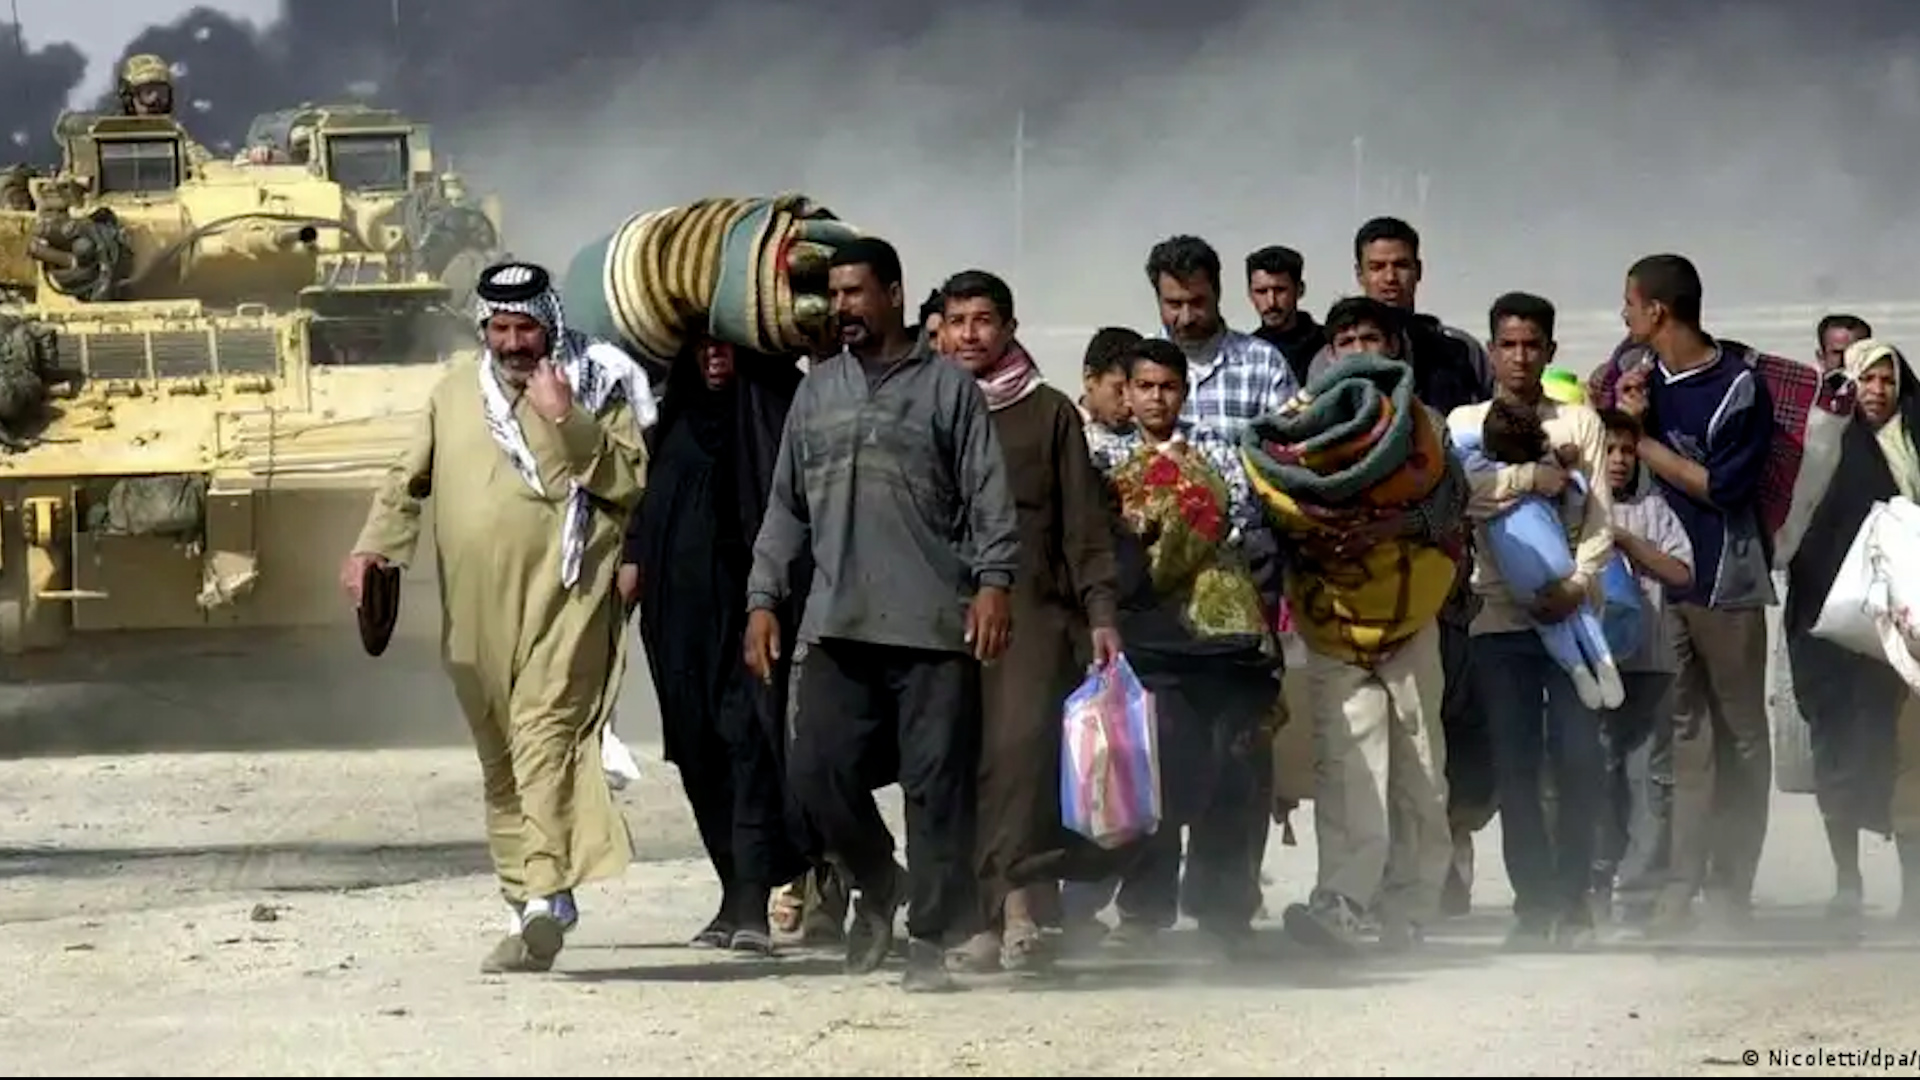  العراق - البصرة 2003 Irak - Menschen fliehen aus Basra im Jahr 2003 im Hintergrund schwarzer Rauch und Panzer Bild Nicolettidpapicture alliance